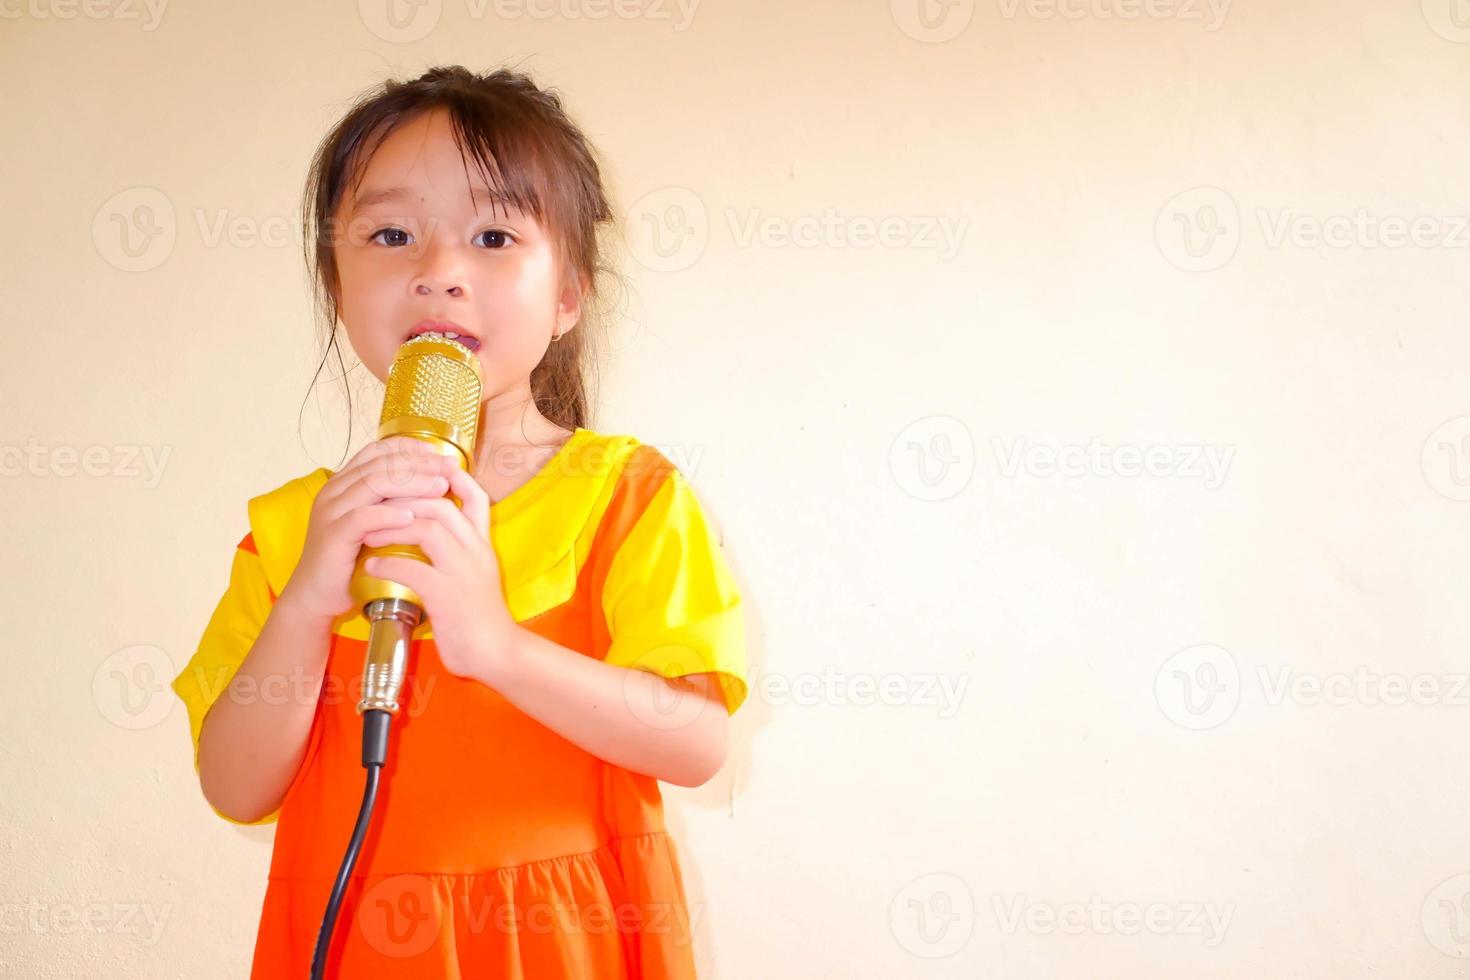 la encantadora niña viste un traje de gokowa o mugunghwa de color amarillo anaranjado, y sostiene música de canto con un micrófono dorado. vestido de moda para niñas y adolescentes. foto